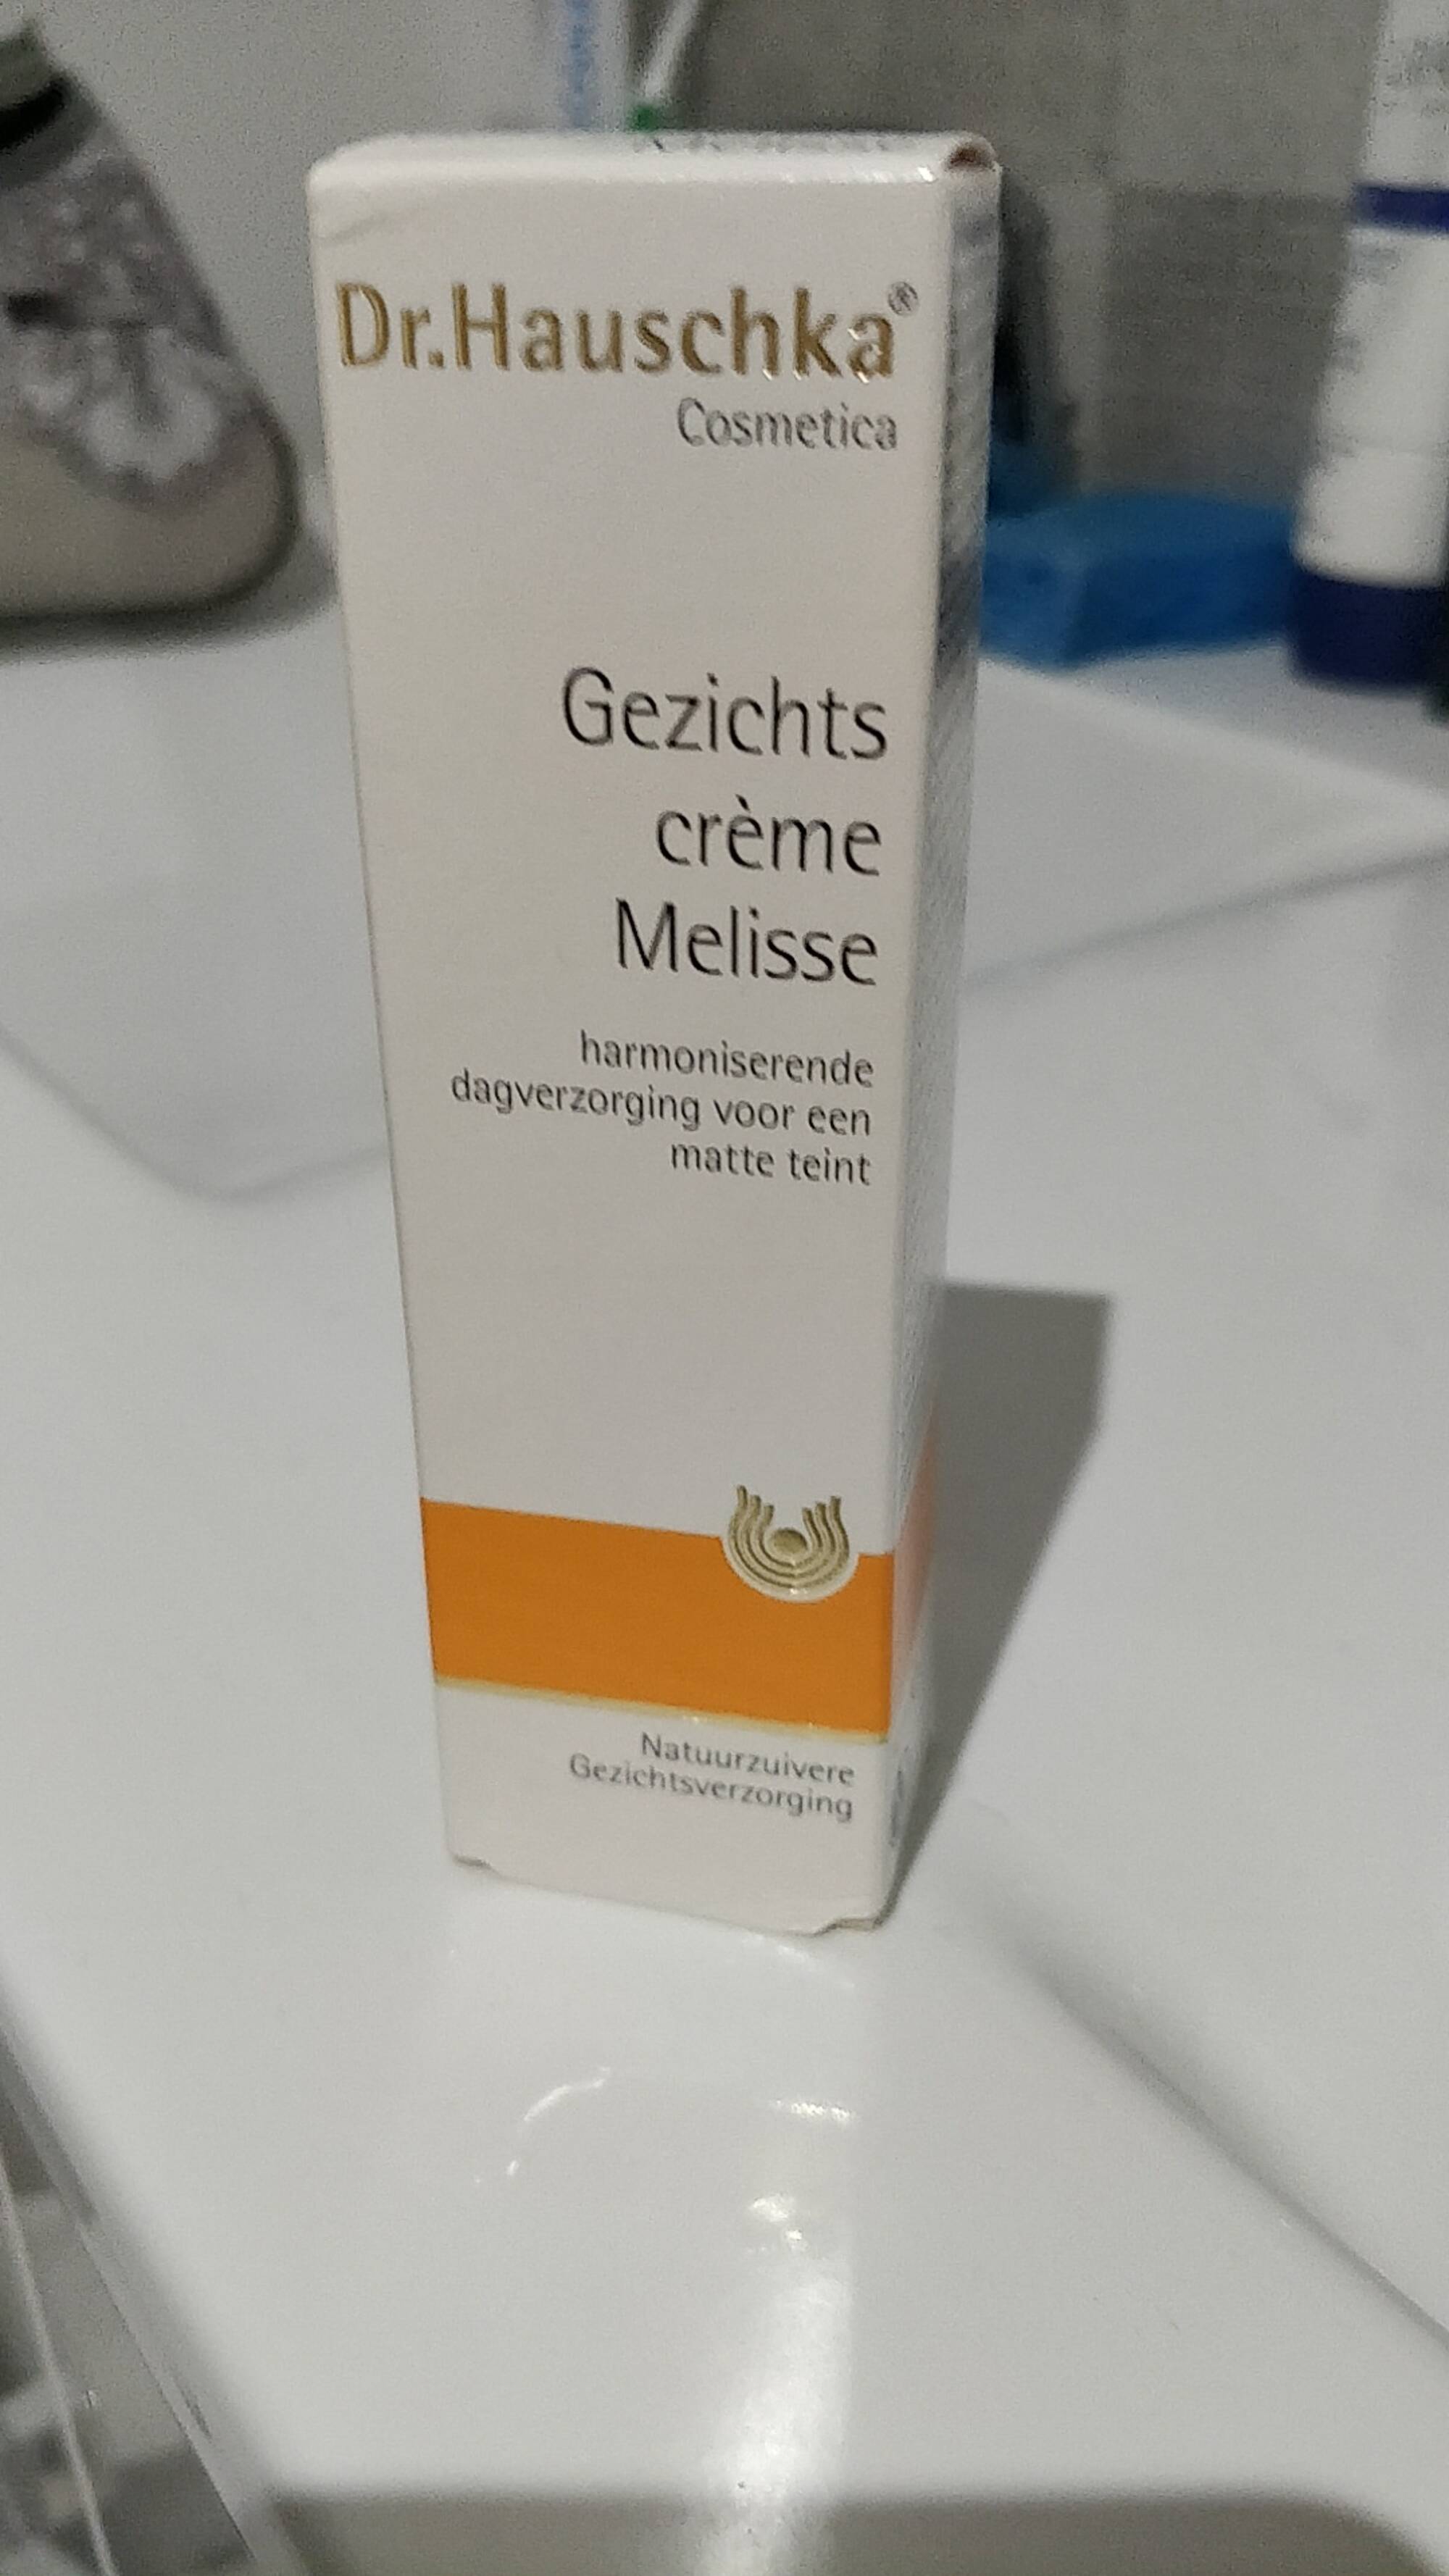 DR. HAUSCHKA - Gezichts crème Melisse